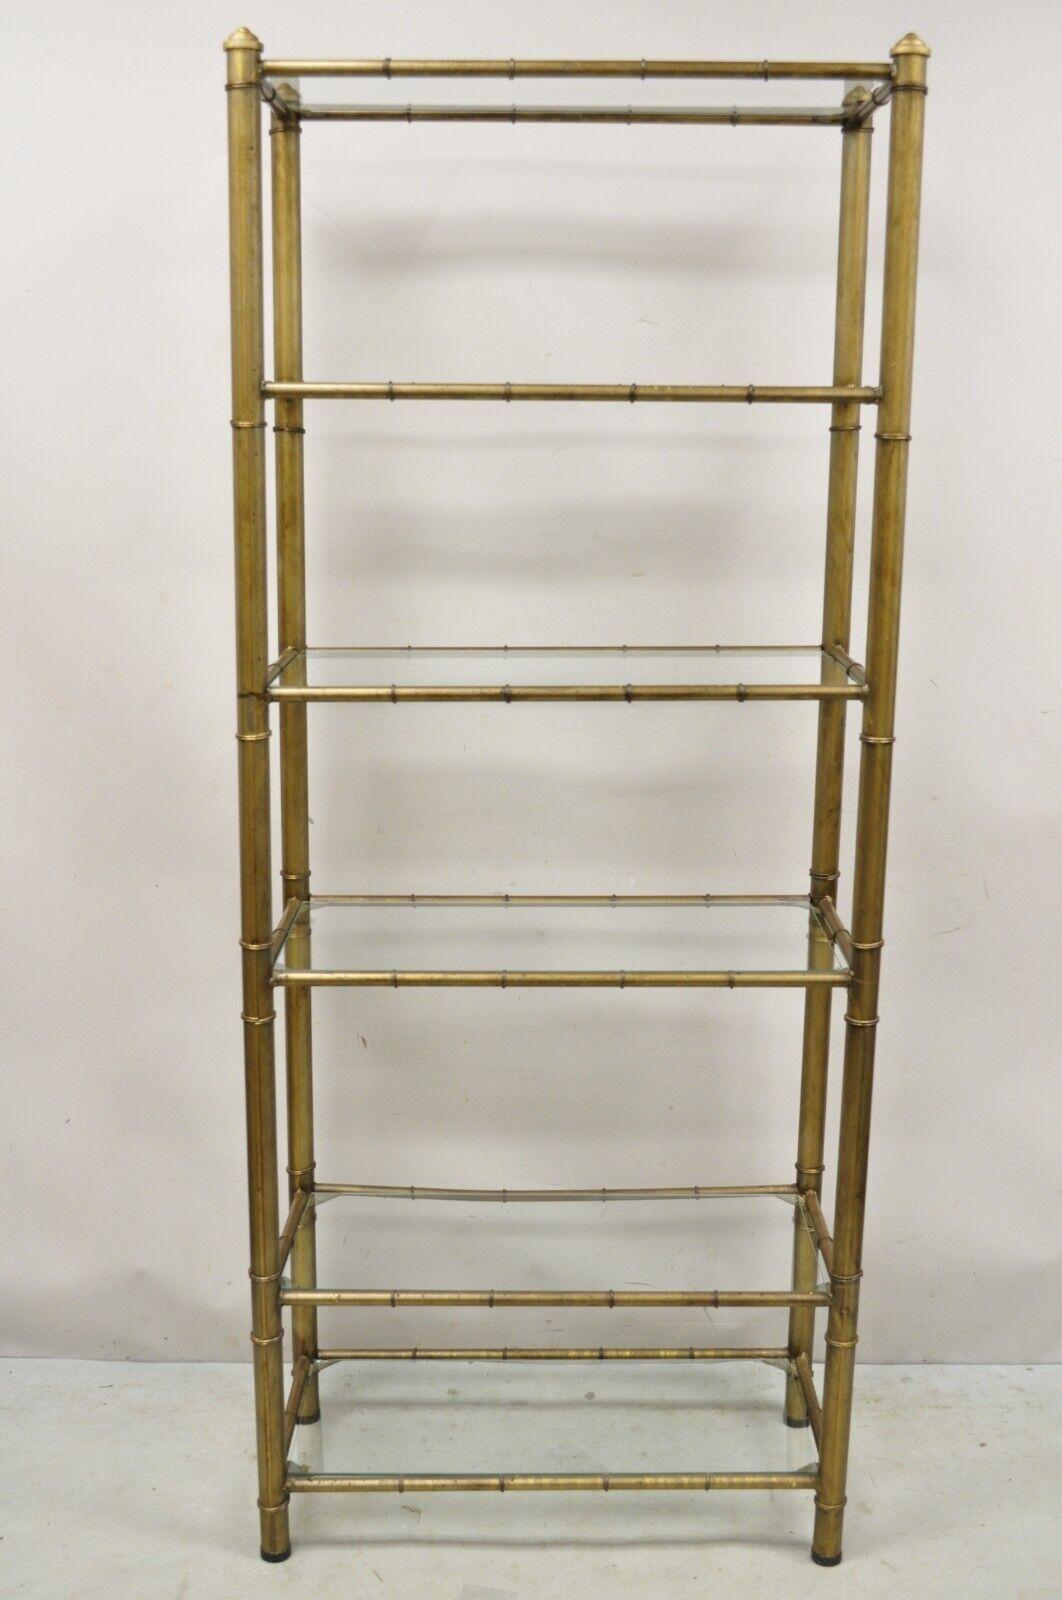 Vintage Hollywood Regency Faux Bamboo Steel Metal Gold 6 Tier Etagere Shelf Bookcase. Cet article se caractérise par un cadre en acier, en métal et en faux bambou, 6 étagères en verre, une finition peinte en or foncé, un très bel article vintage, un